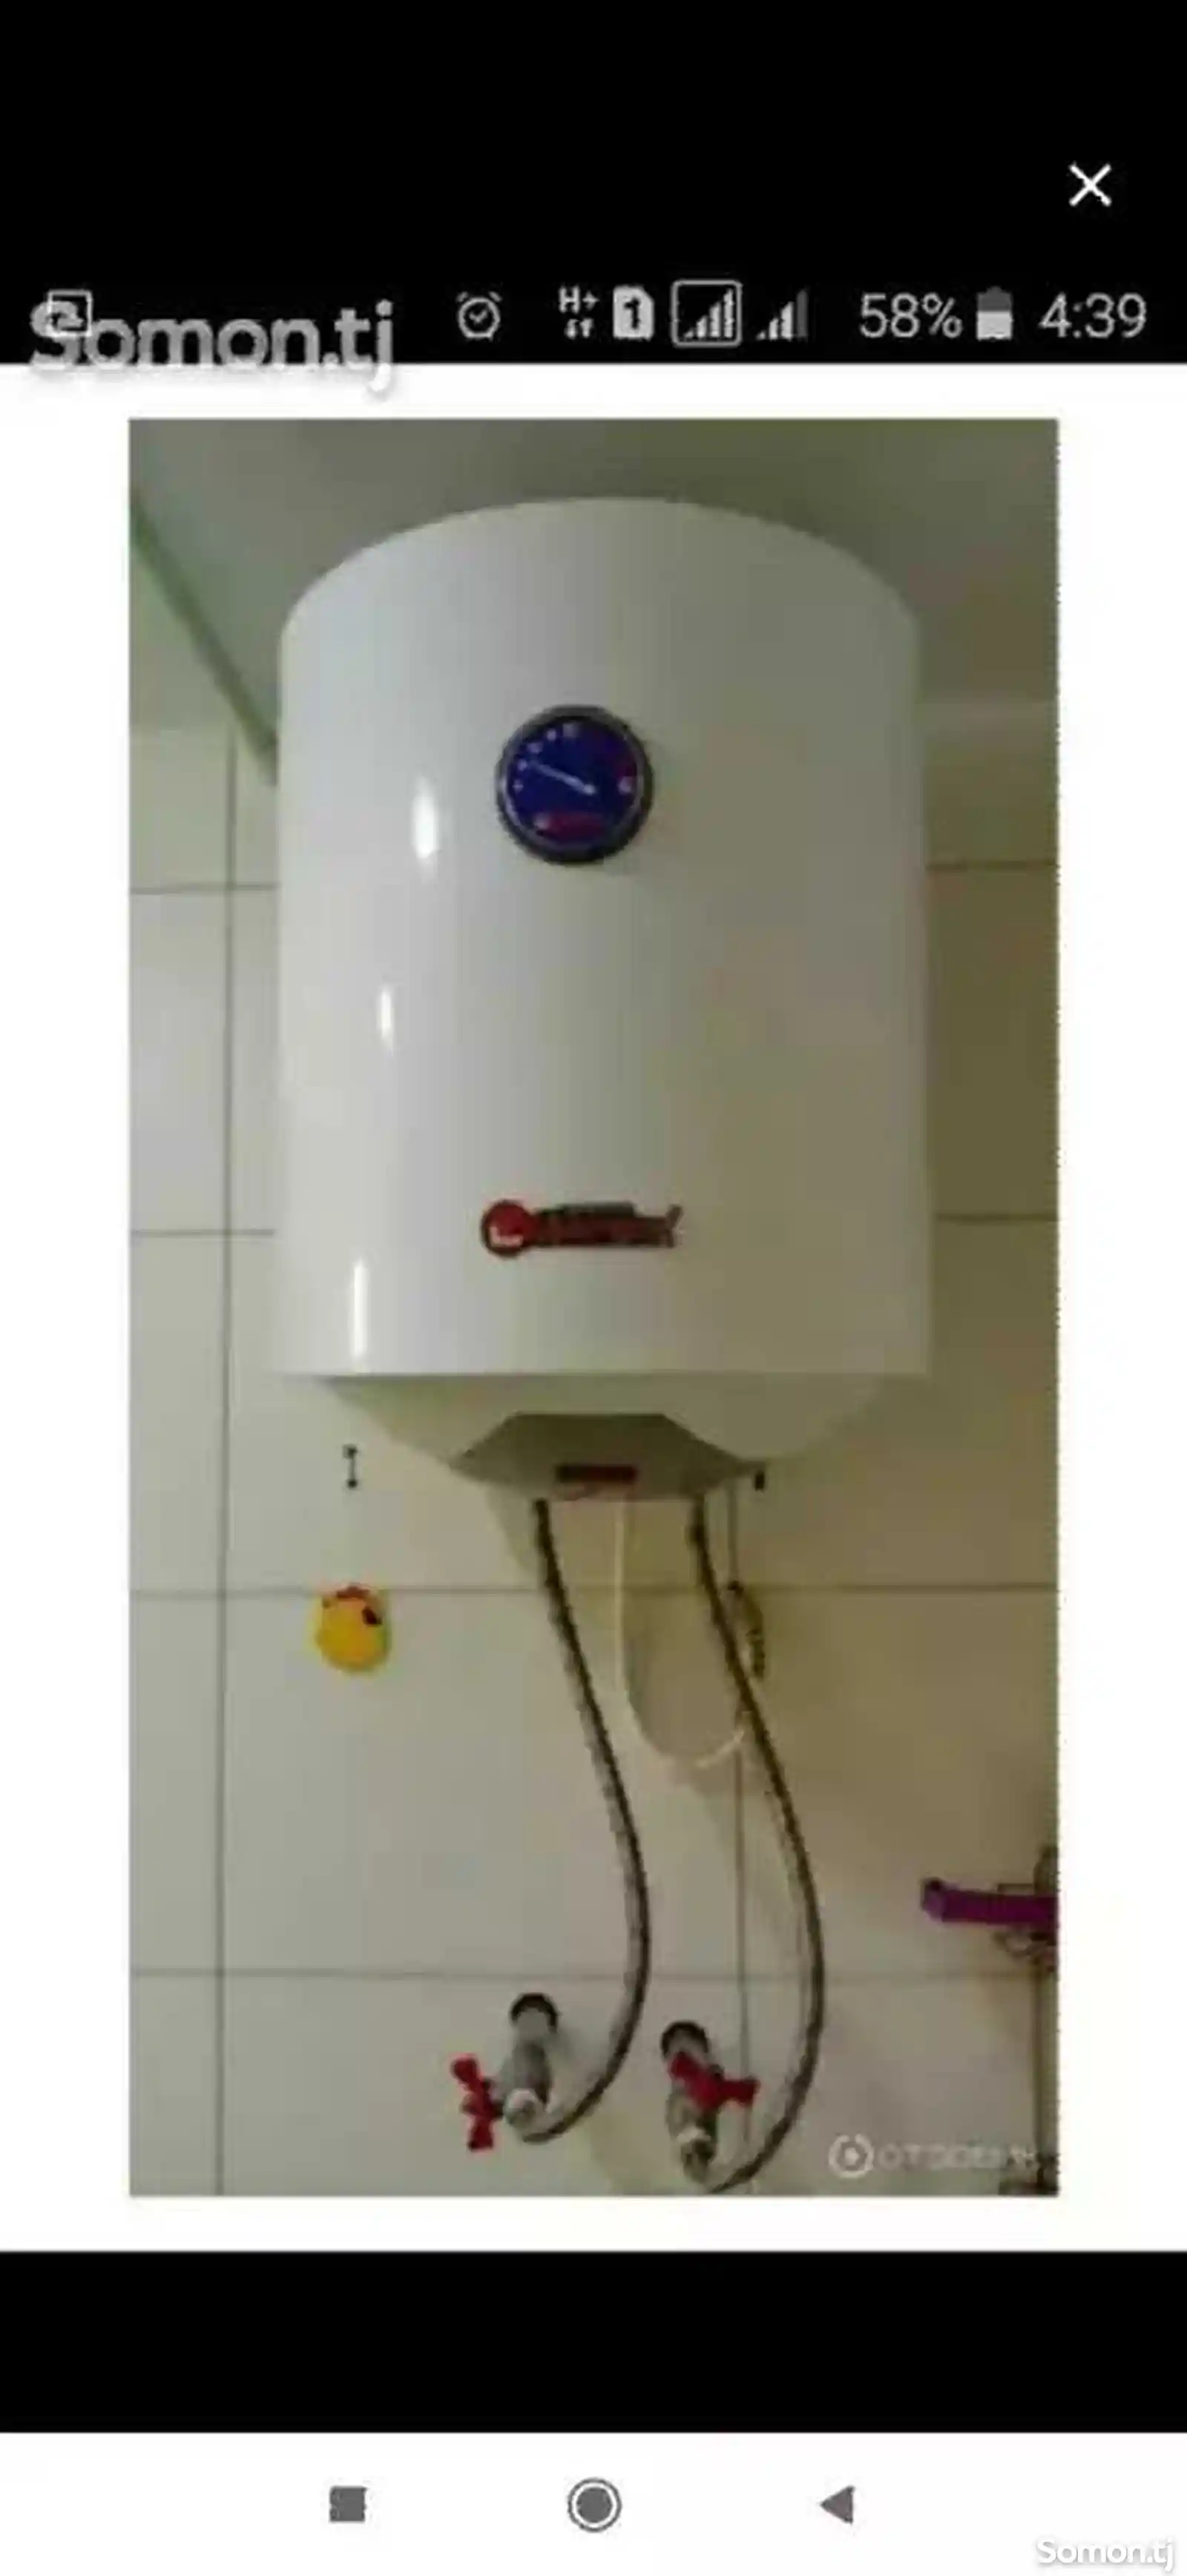 Установка водонагревателей